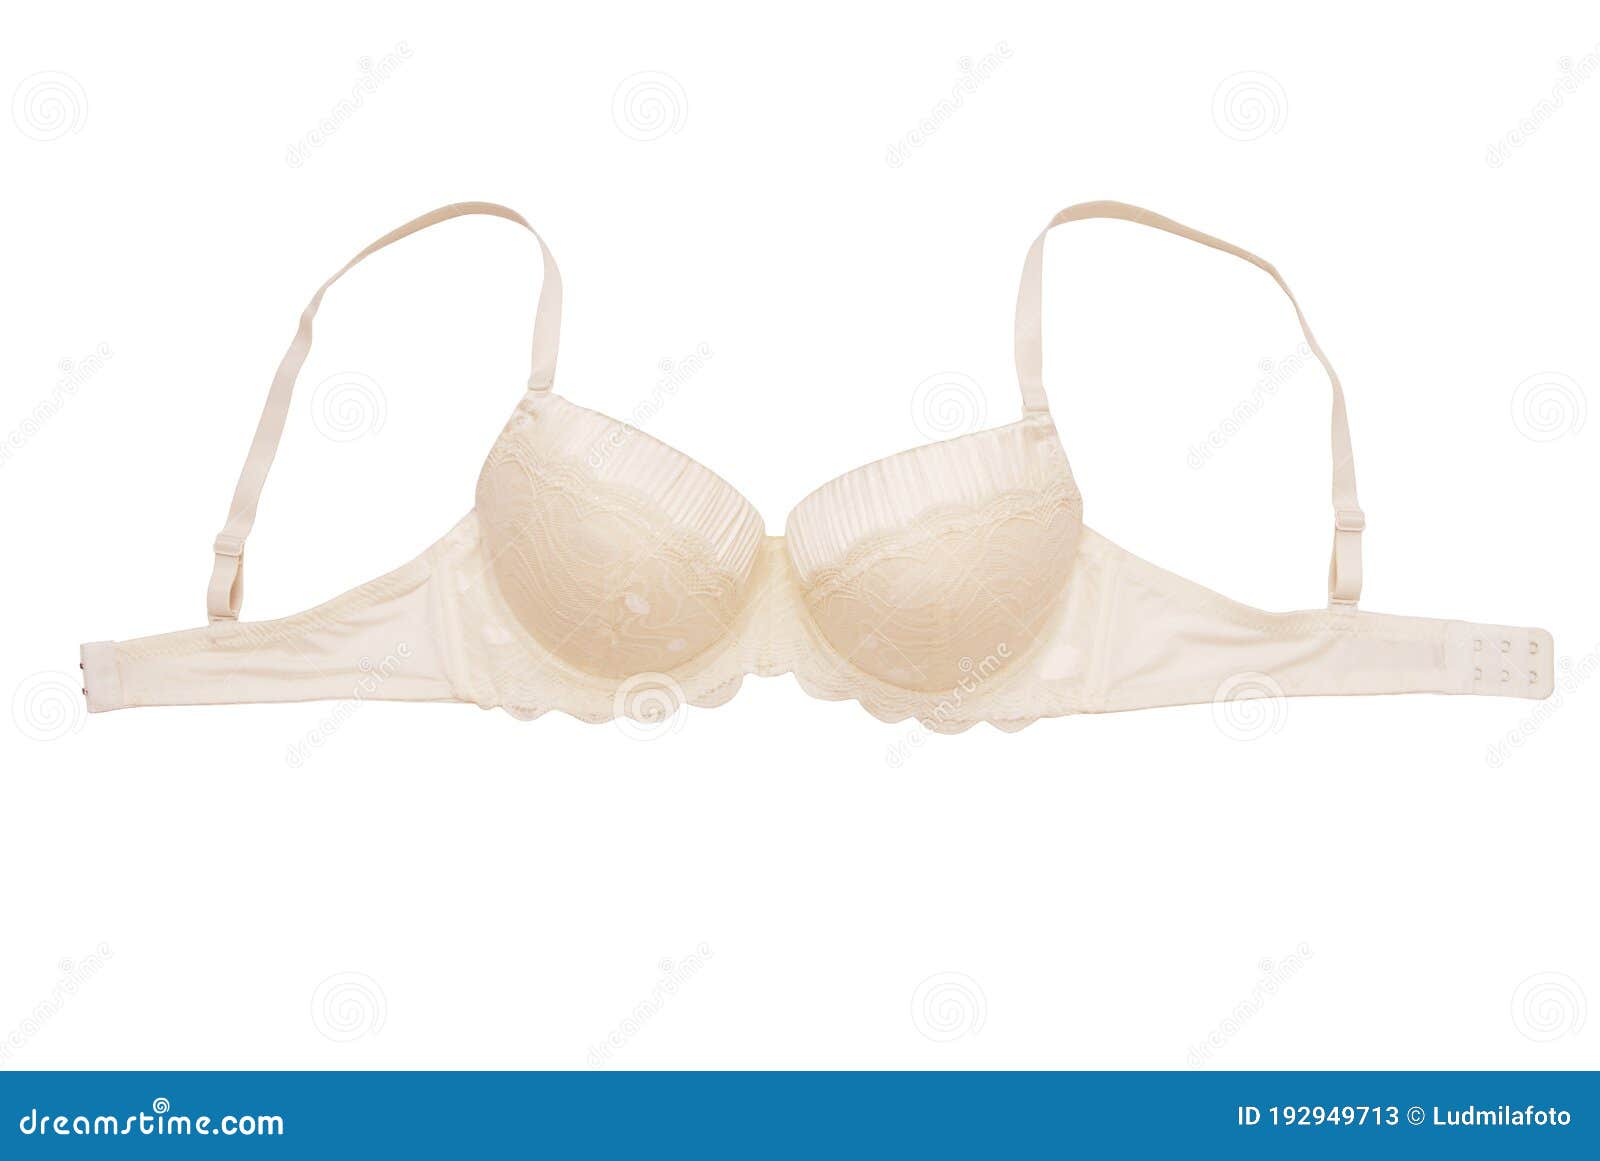 Female breast in a beige bra closeup. Isolate Stock Photo